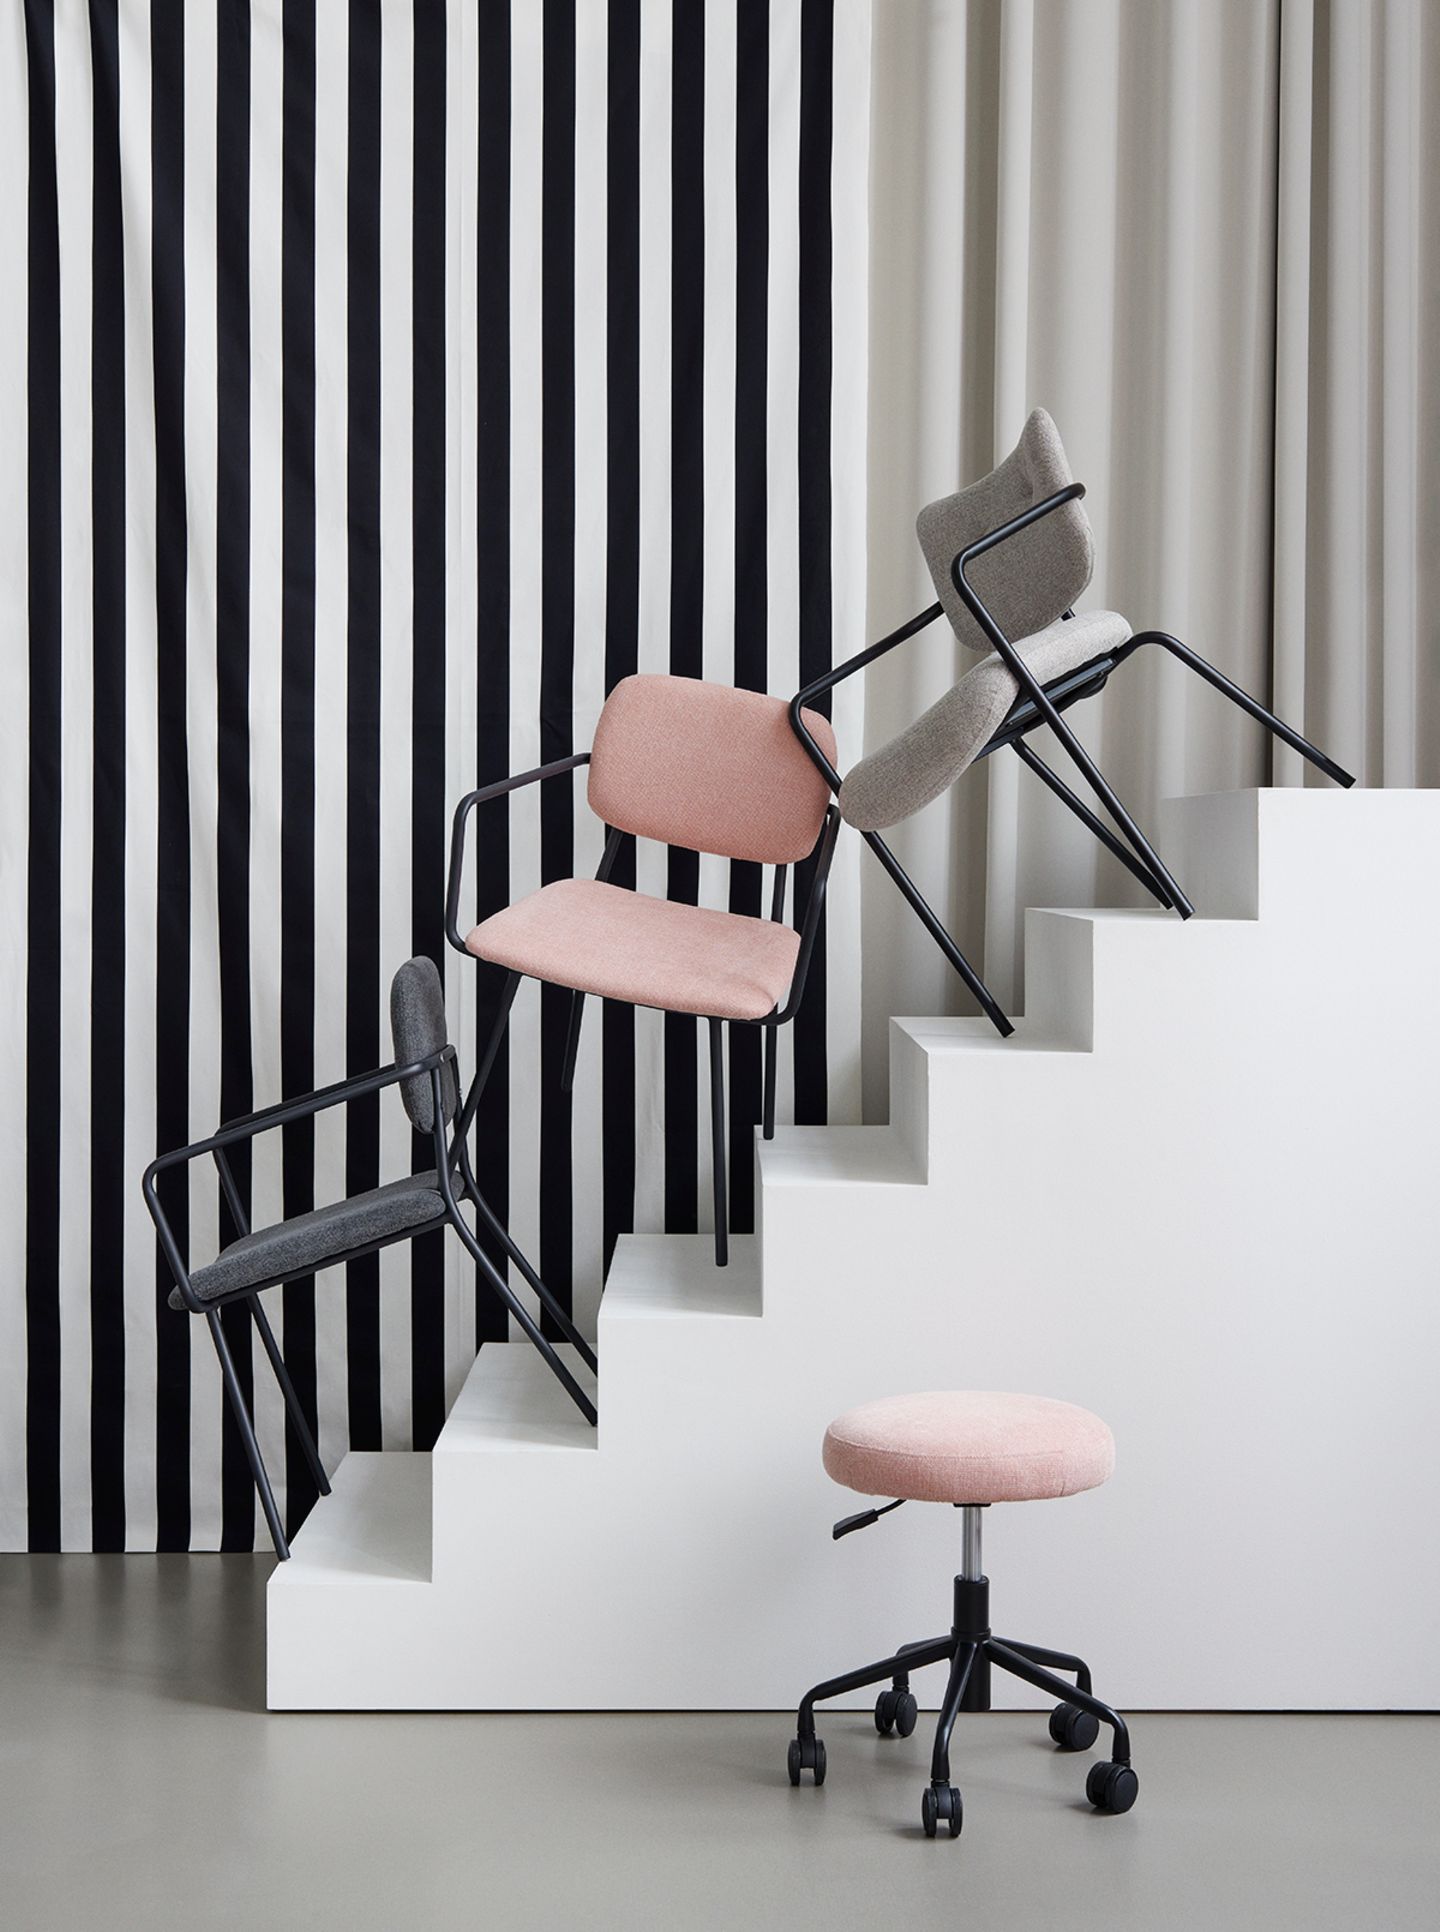 Graue und rosa Stühle auf weißer Treppe